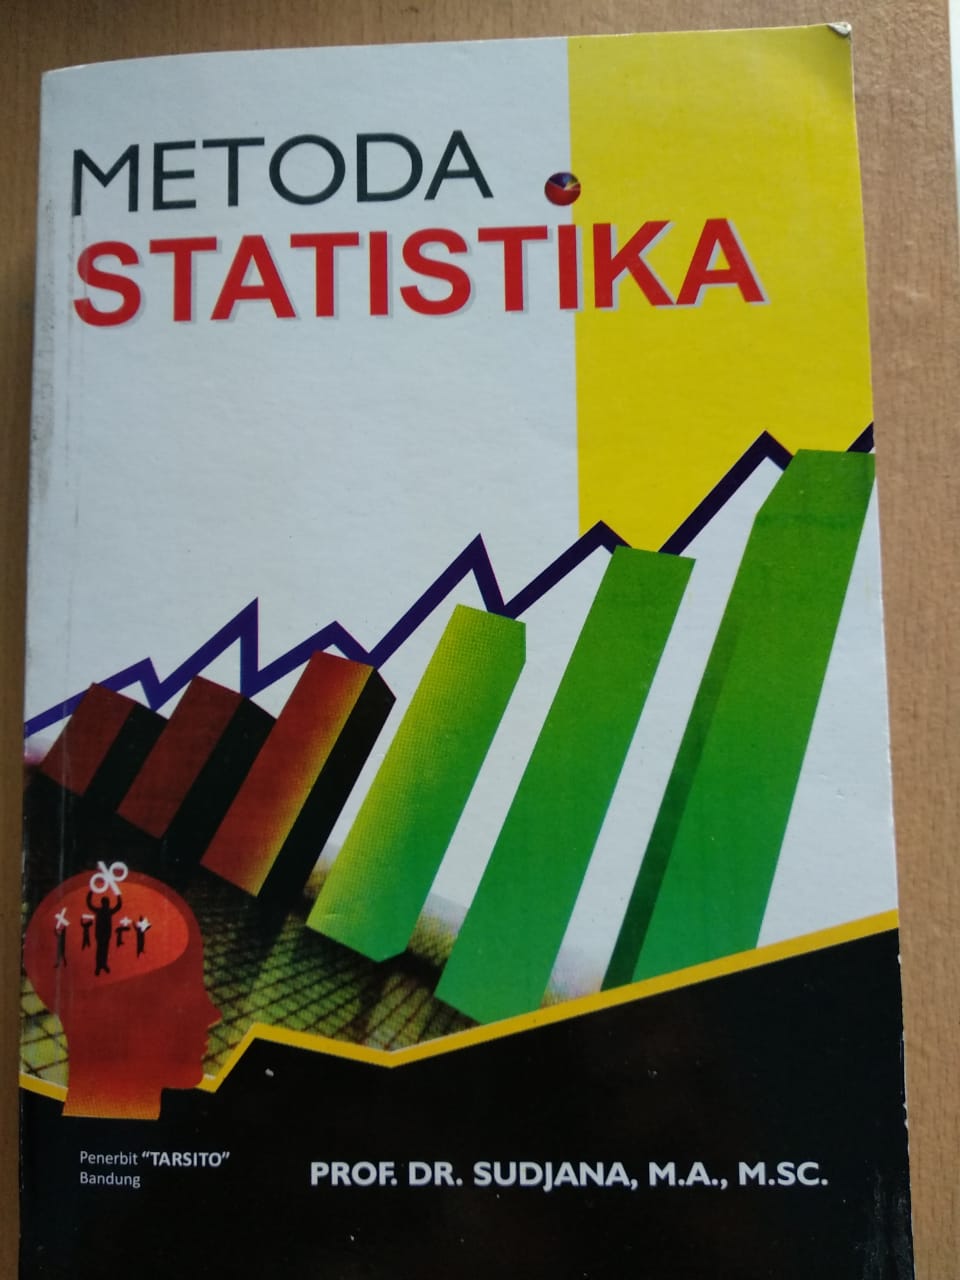 Metoda Statistika